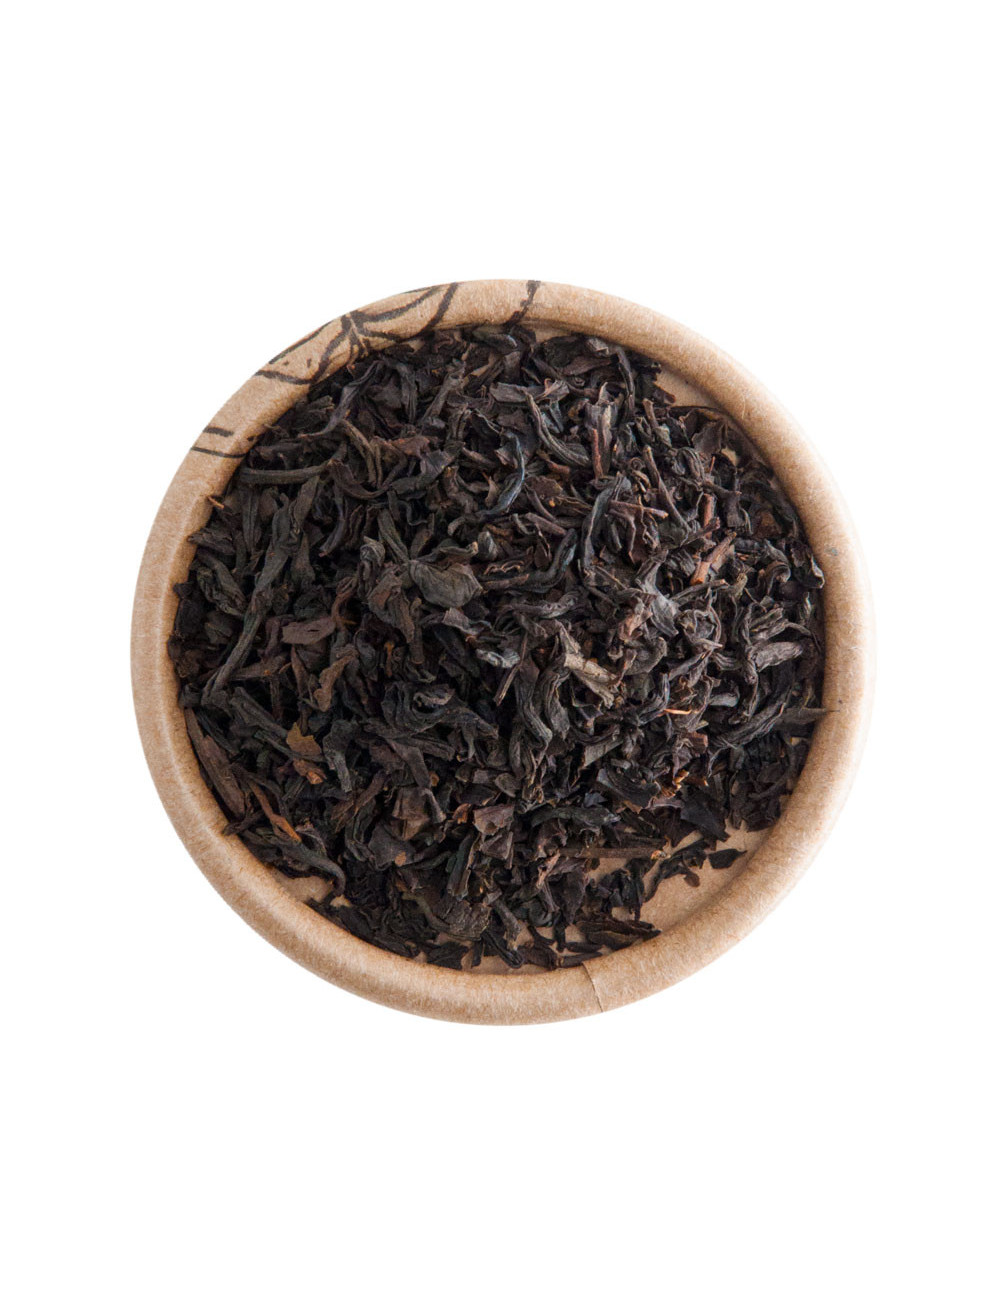 Miscela Turca tè nero - La Pianta del Tè shop online